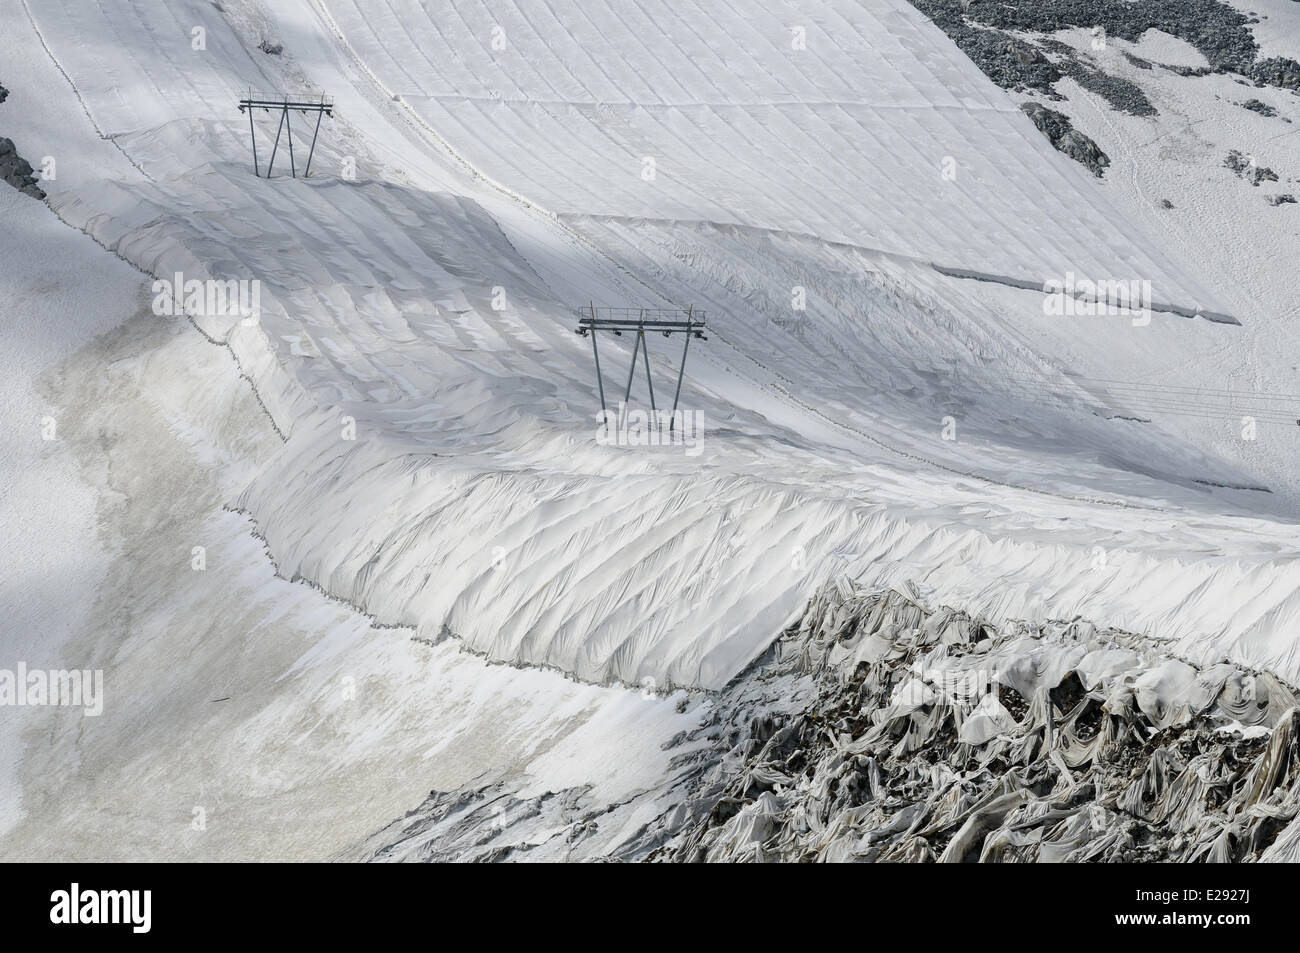 Revestimientos textiles de protección para retrasar el derretimiento de nieve en pista de esquí con telesquí, El Glaciar Presena, Alpes Italianos, Italia, Julio Foto de stock